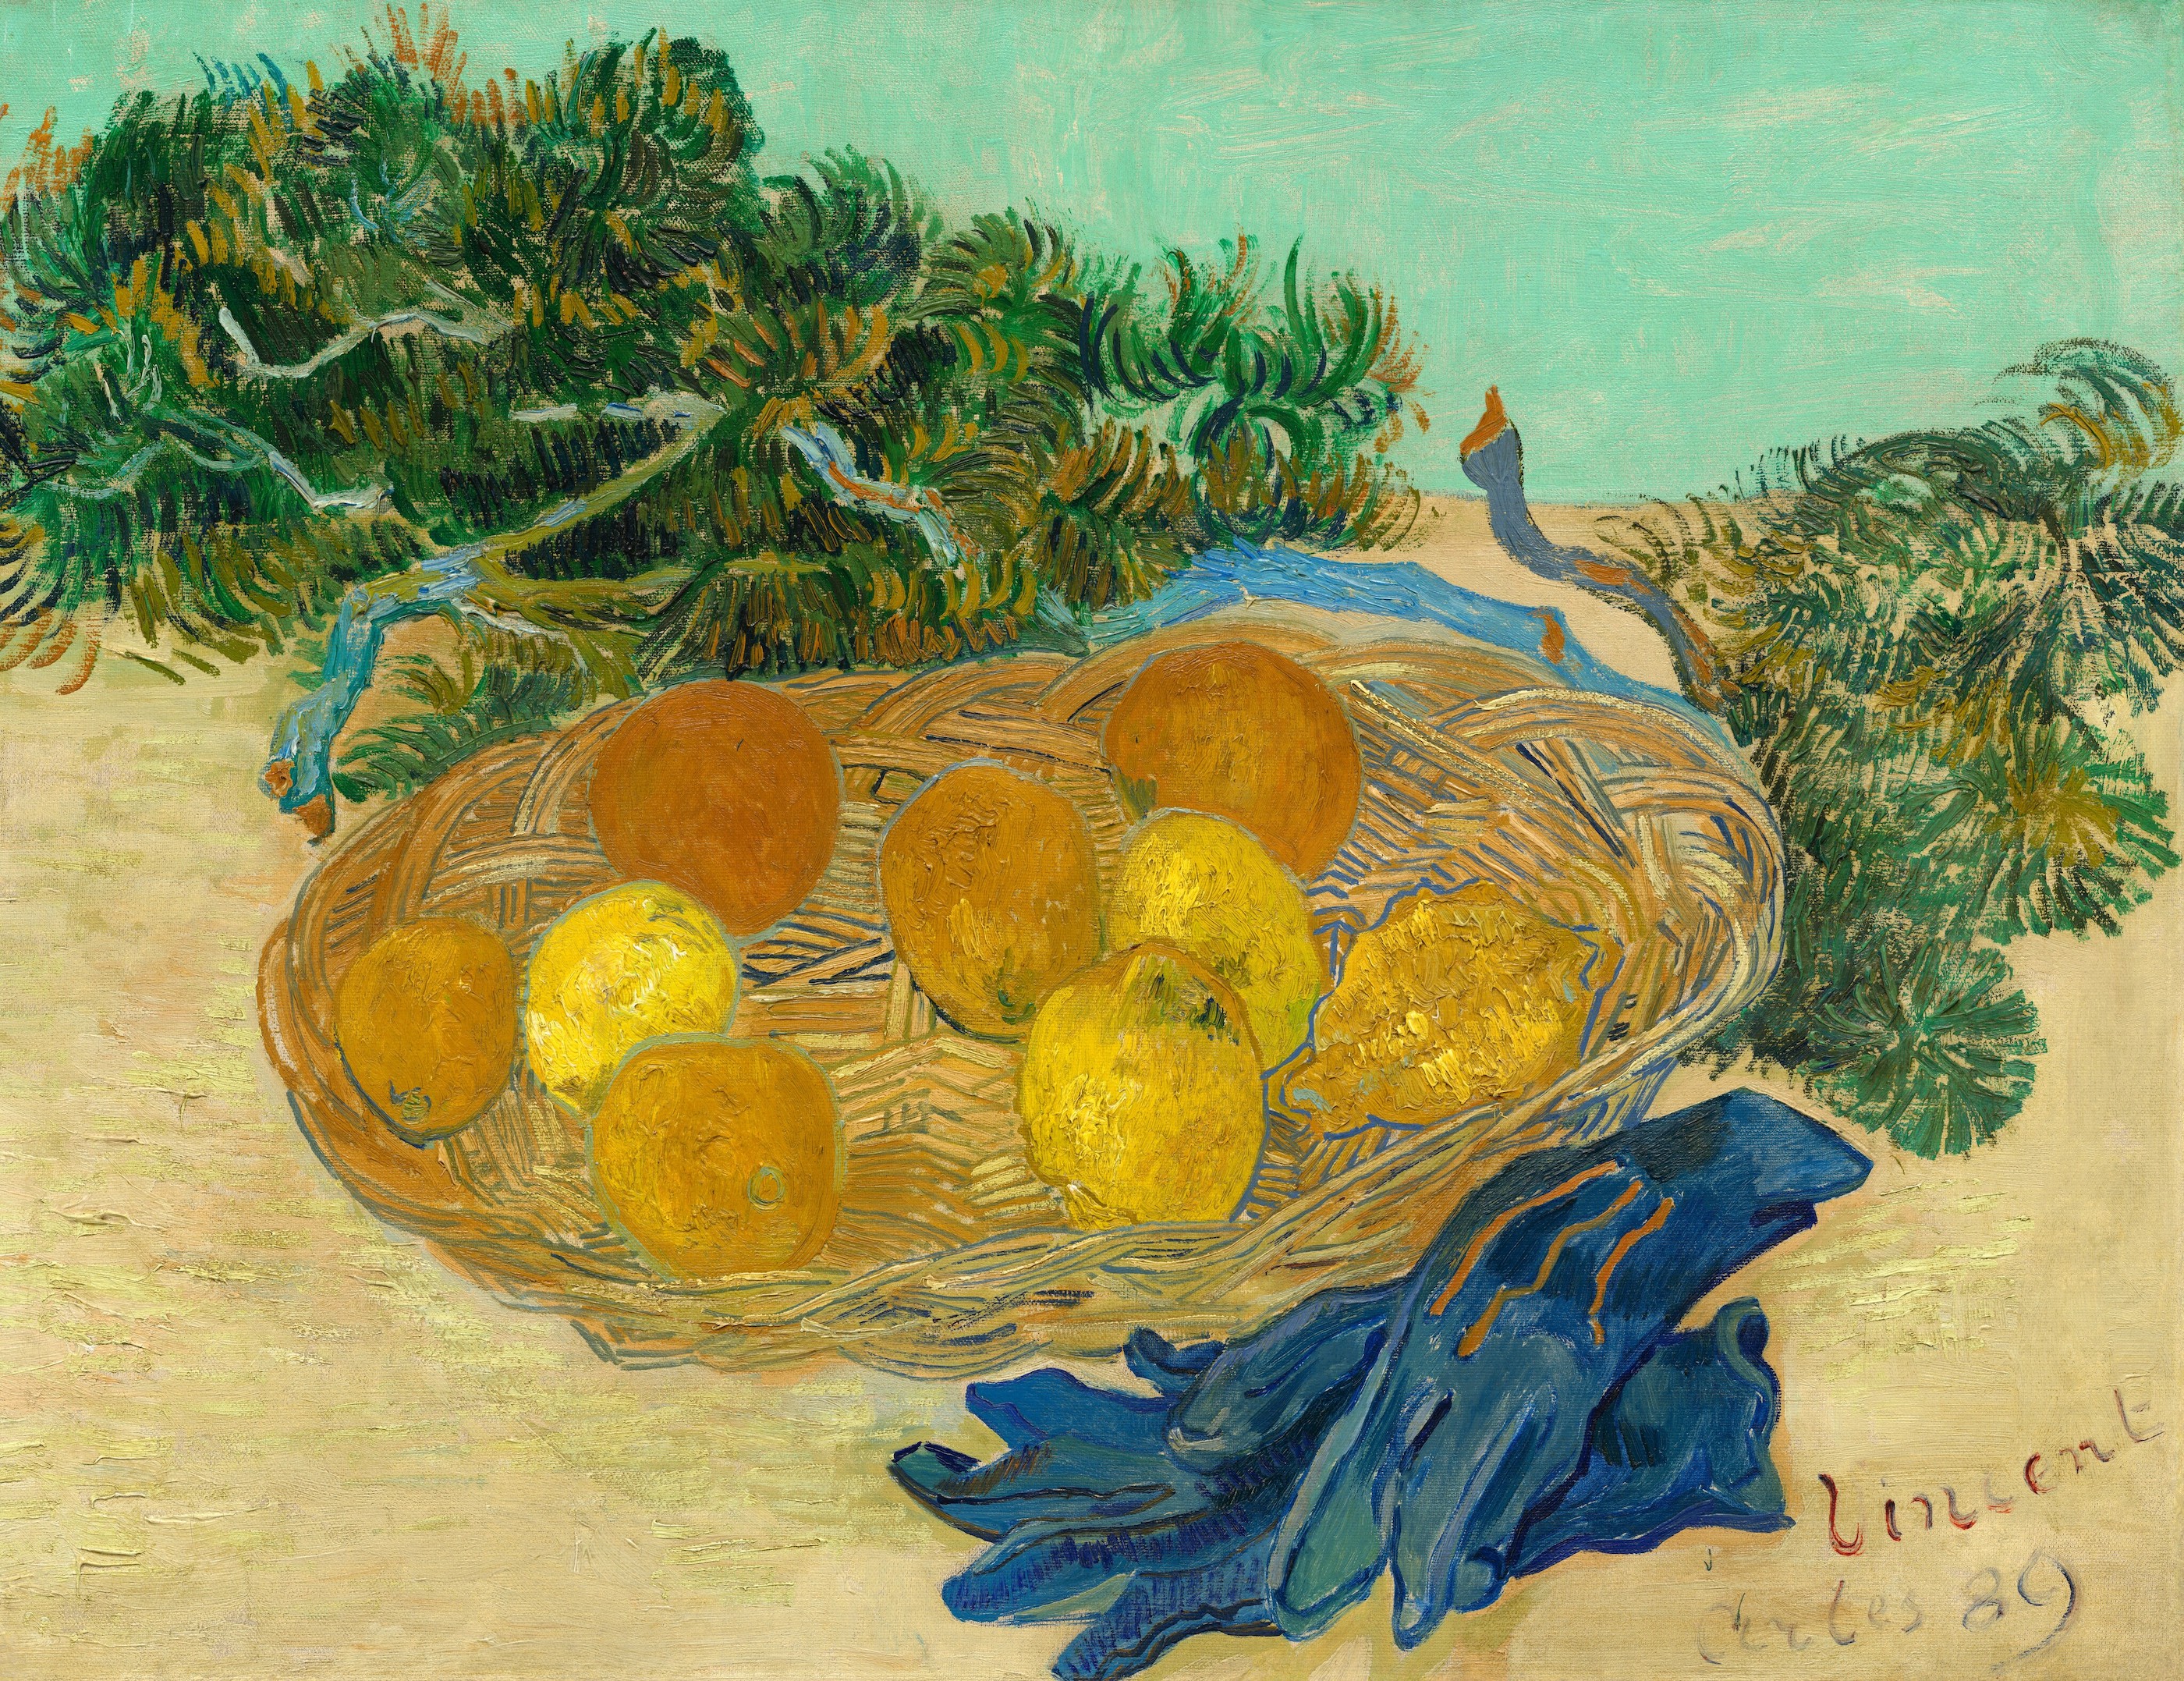 طبيعة صامتة: برتقال وليمون وقفازات زرقاء. by فينسنت فان جوخ - 1889 - الأبعاد: 62 × 48 س 